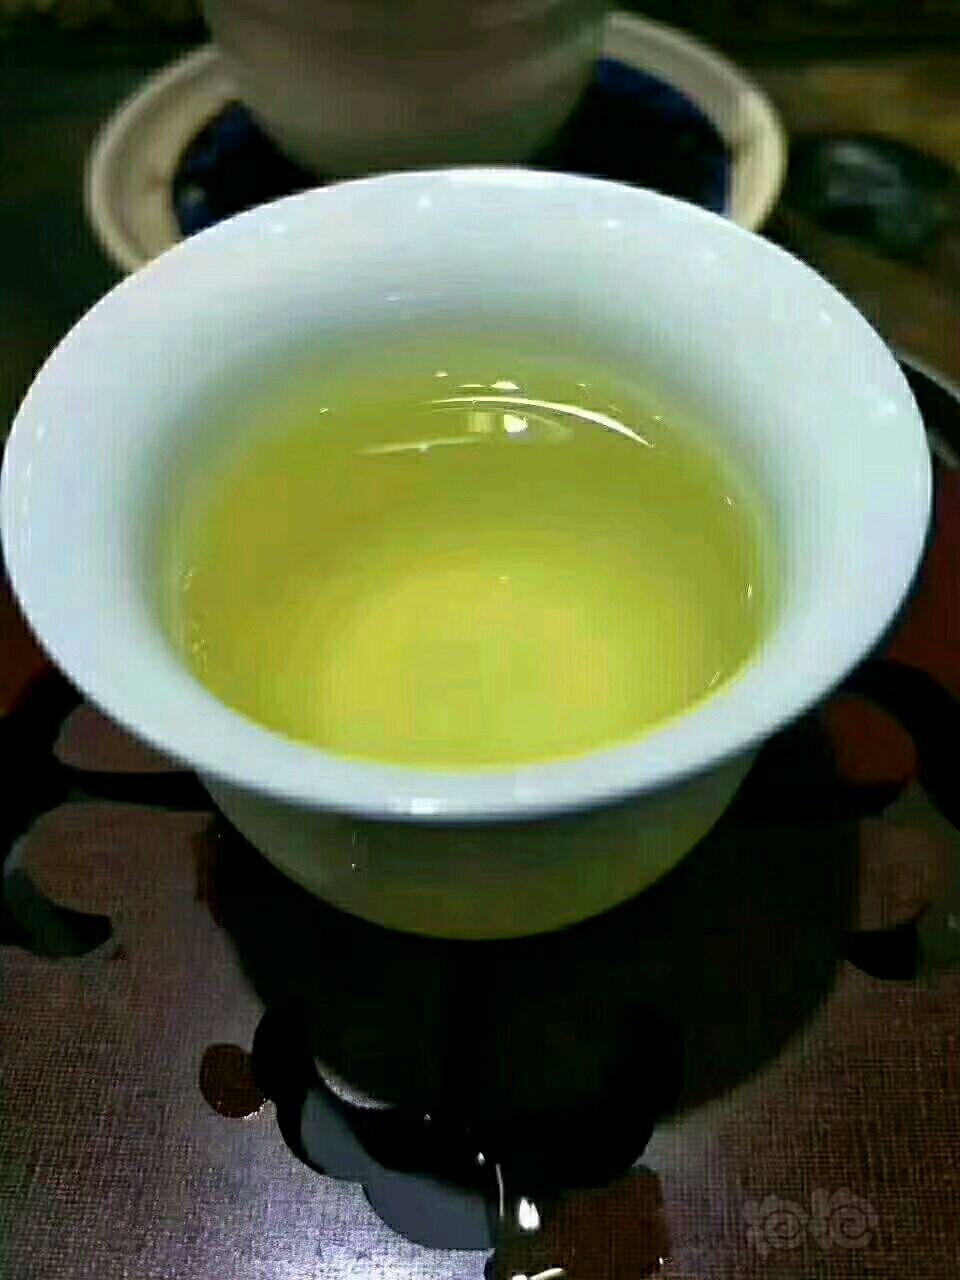 【用品】2018-4-25#RMB拍卖纯天然绿茶-图1